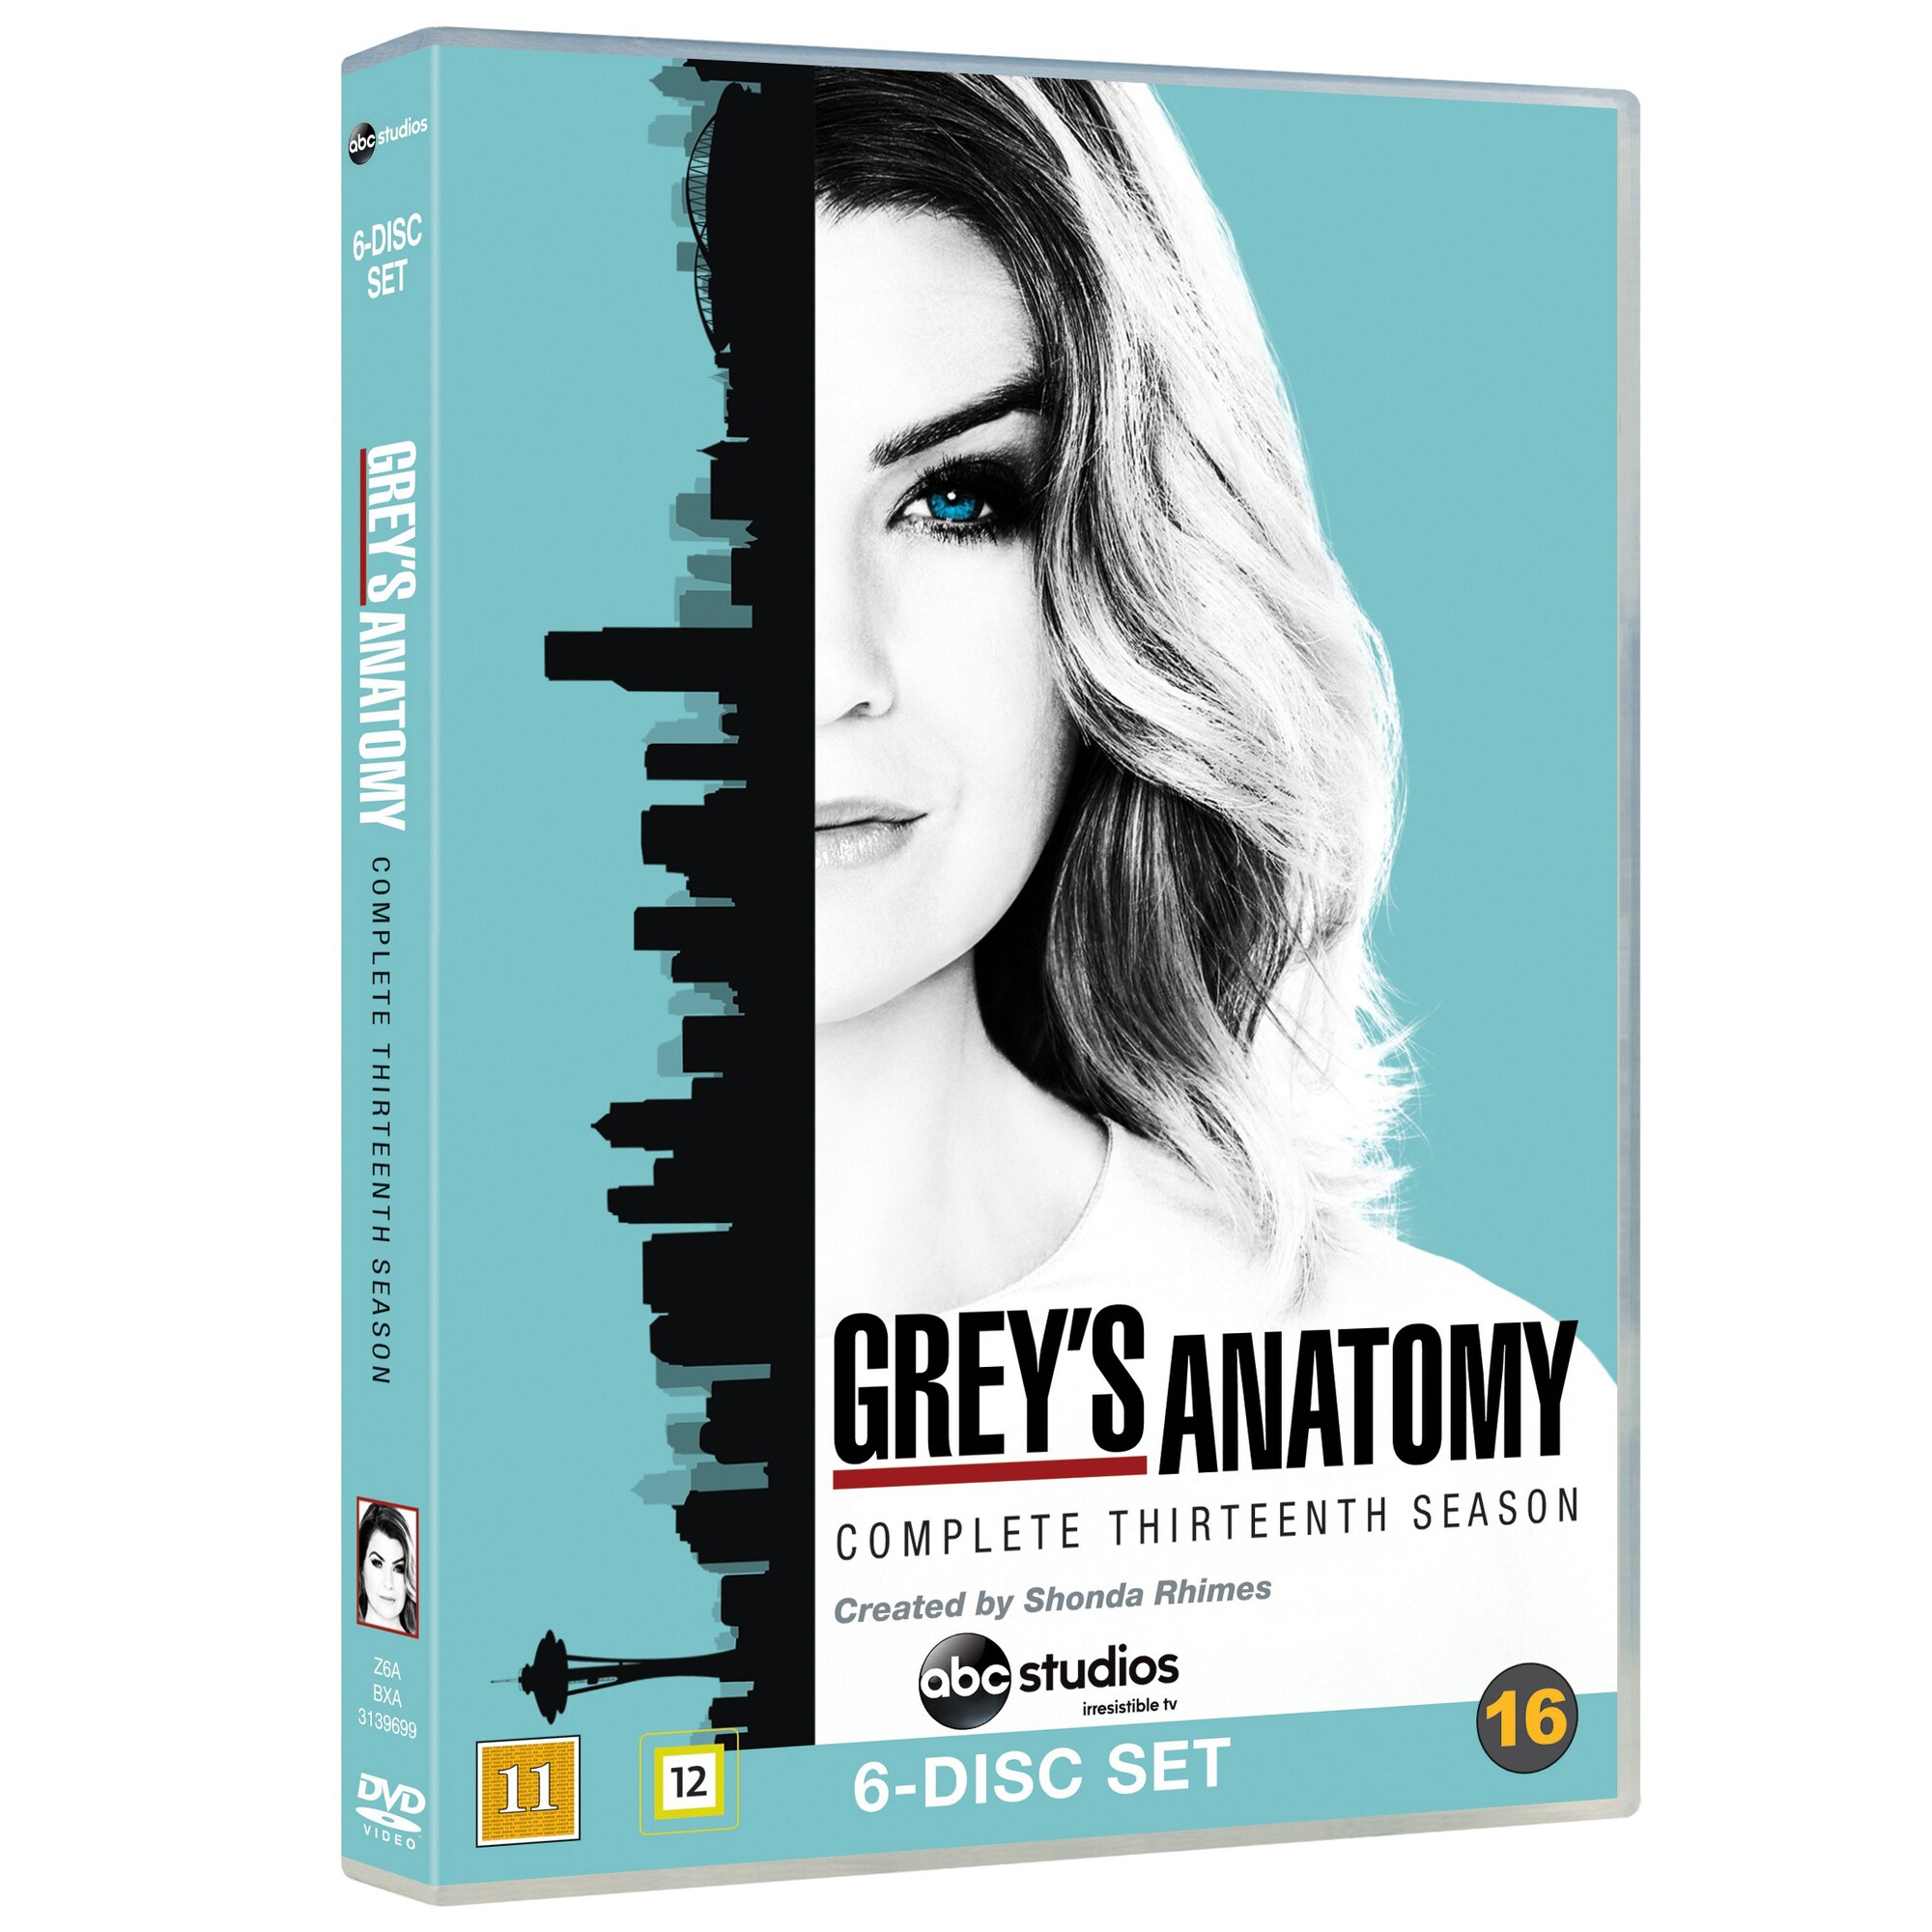 Greyn anatomia - Kausi 13 (DVD) - Gigantti verkkokauppa